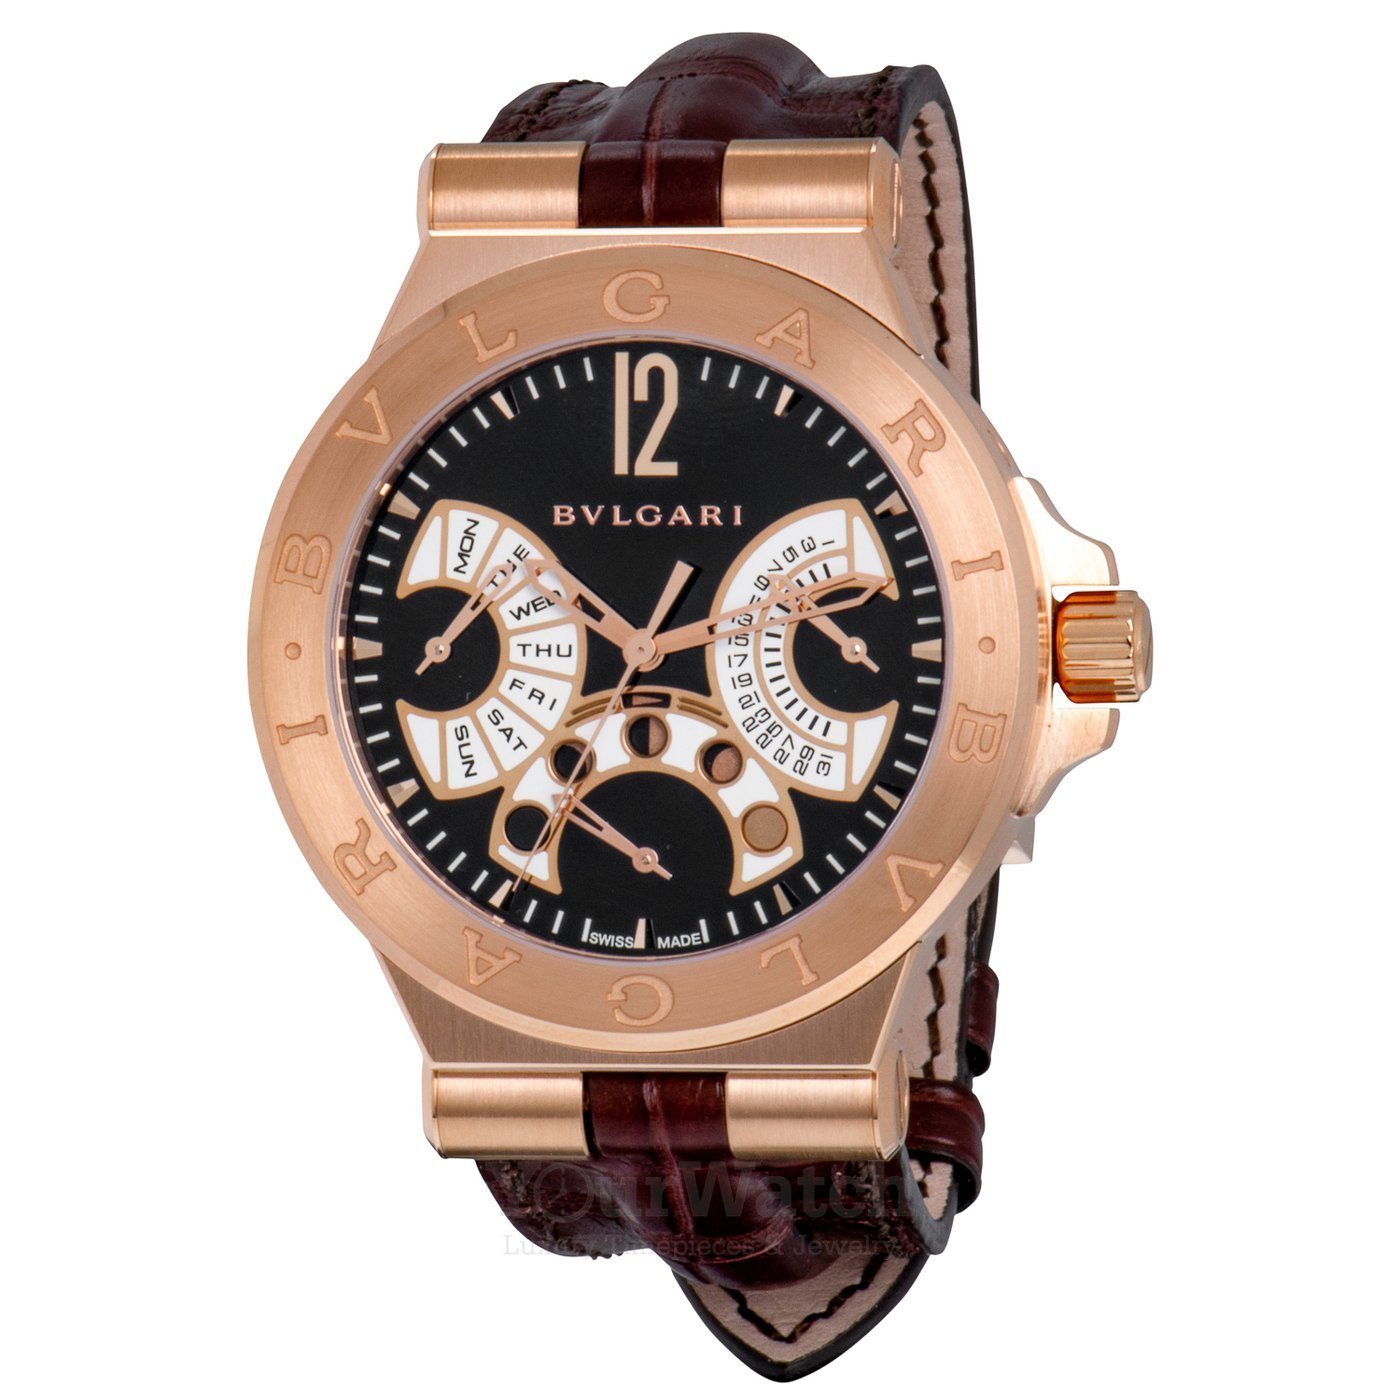 Bvlgari Bvlgari Men's Watch : buy at reasonable cost in Catalog of premium  wristwatches Swiss Watches Inc.